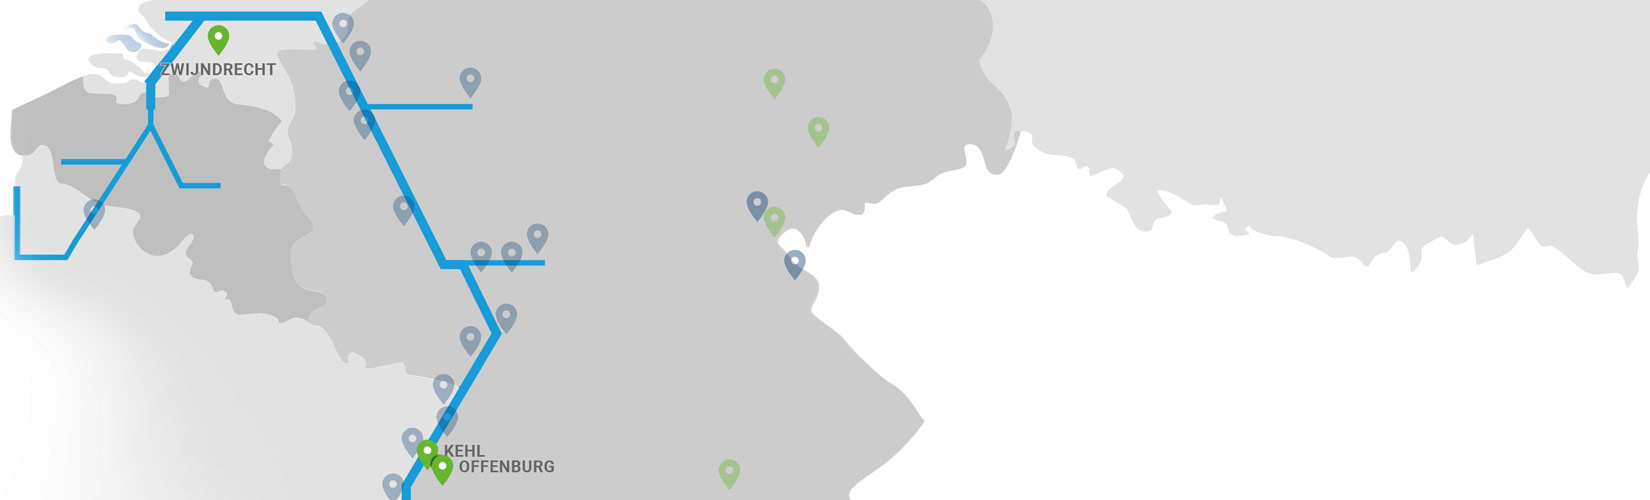 CNS Standorte auf einer Karte